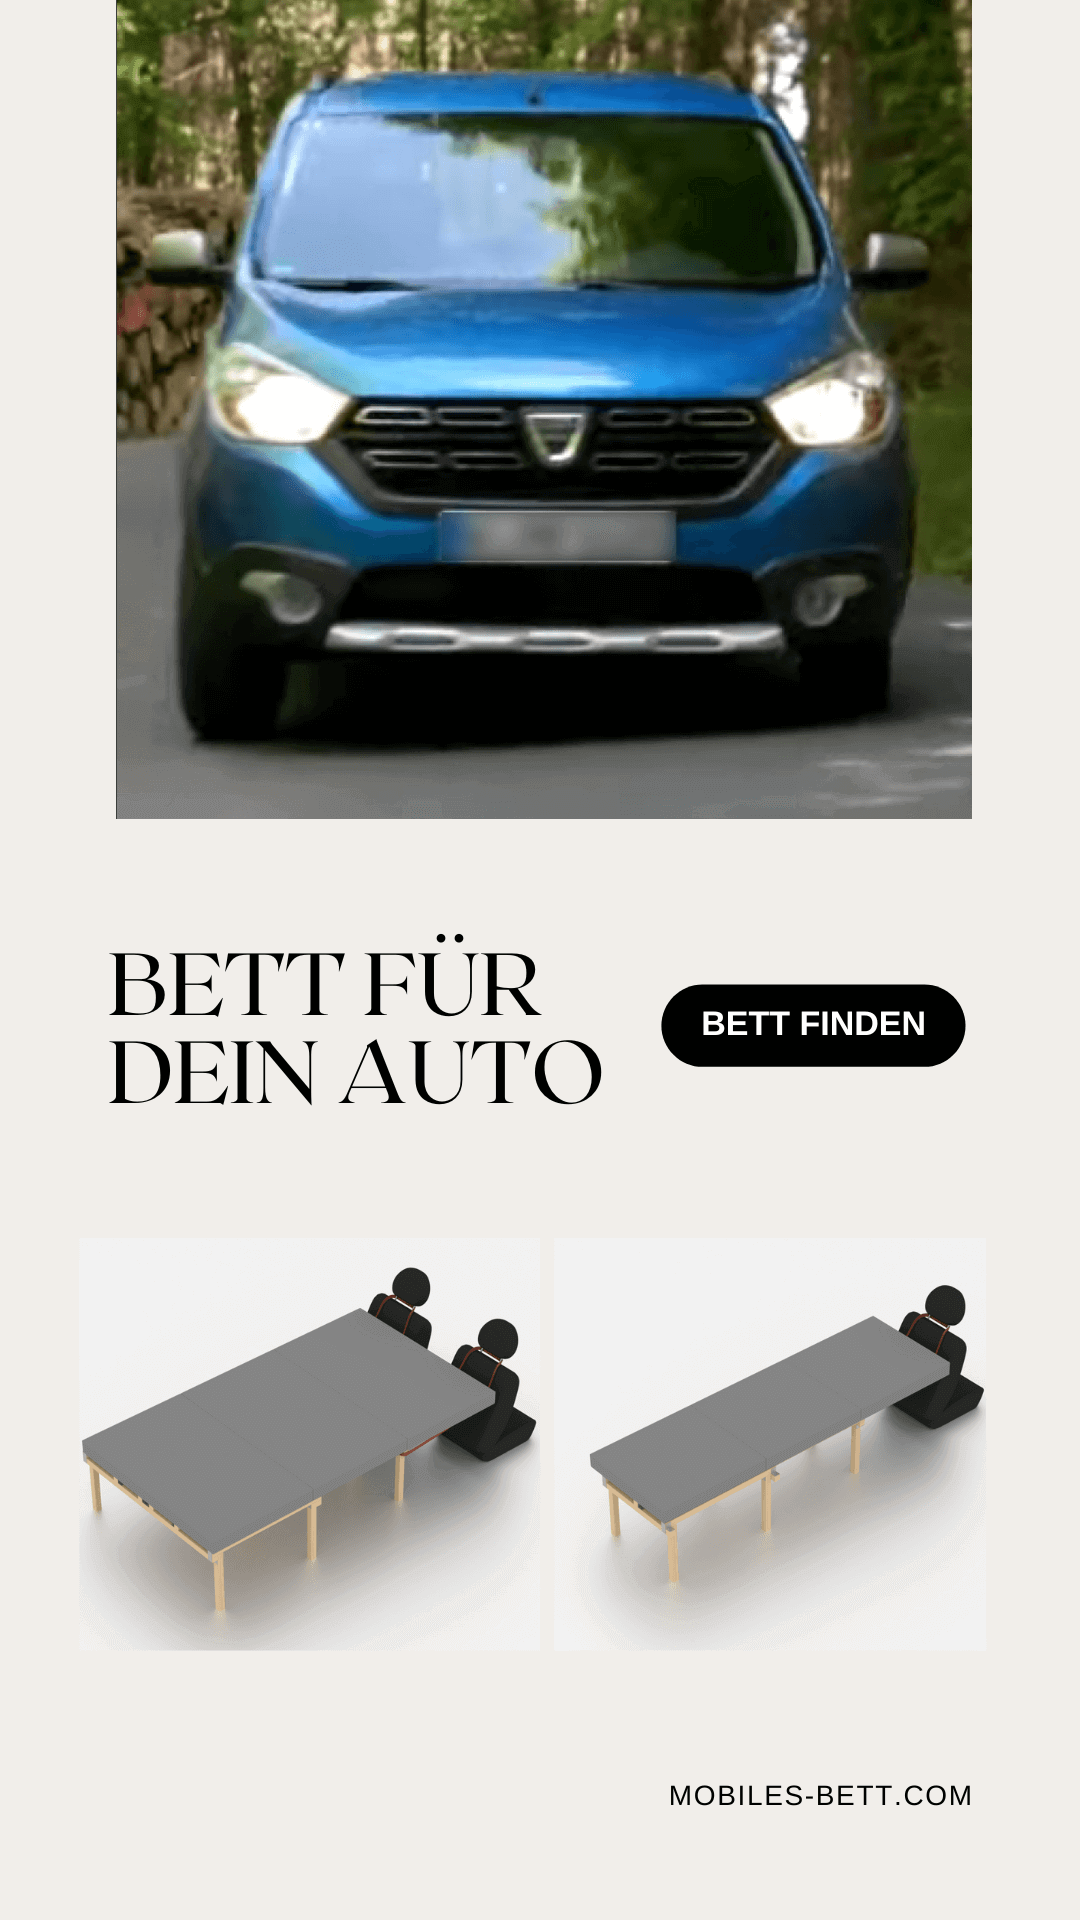 Bett für Dacia Lodgy selbst bauen - Anleitung für Einzel-, Doppel- und Kombi-Bett - becomePro